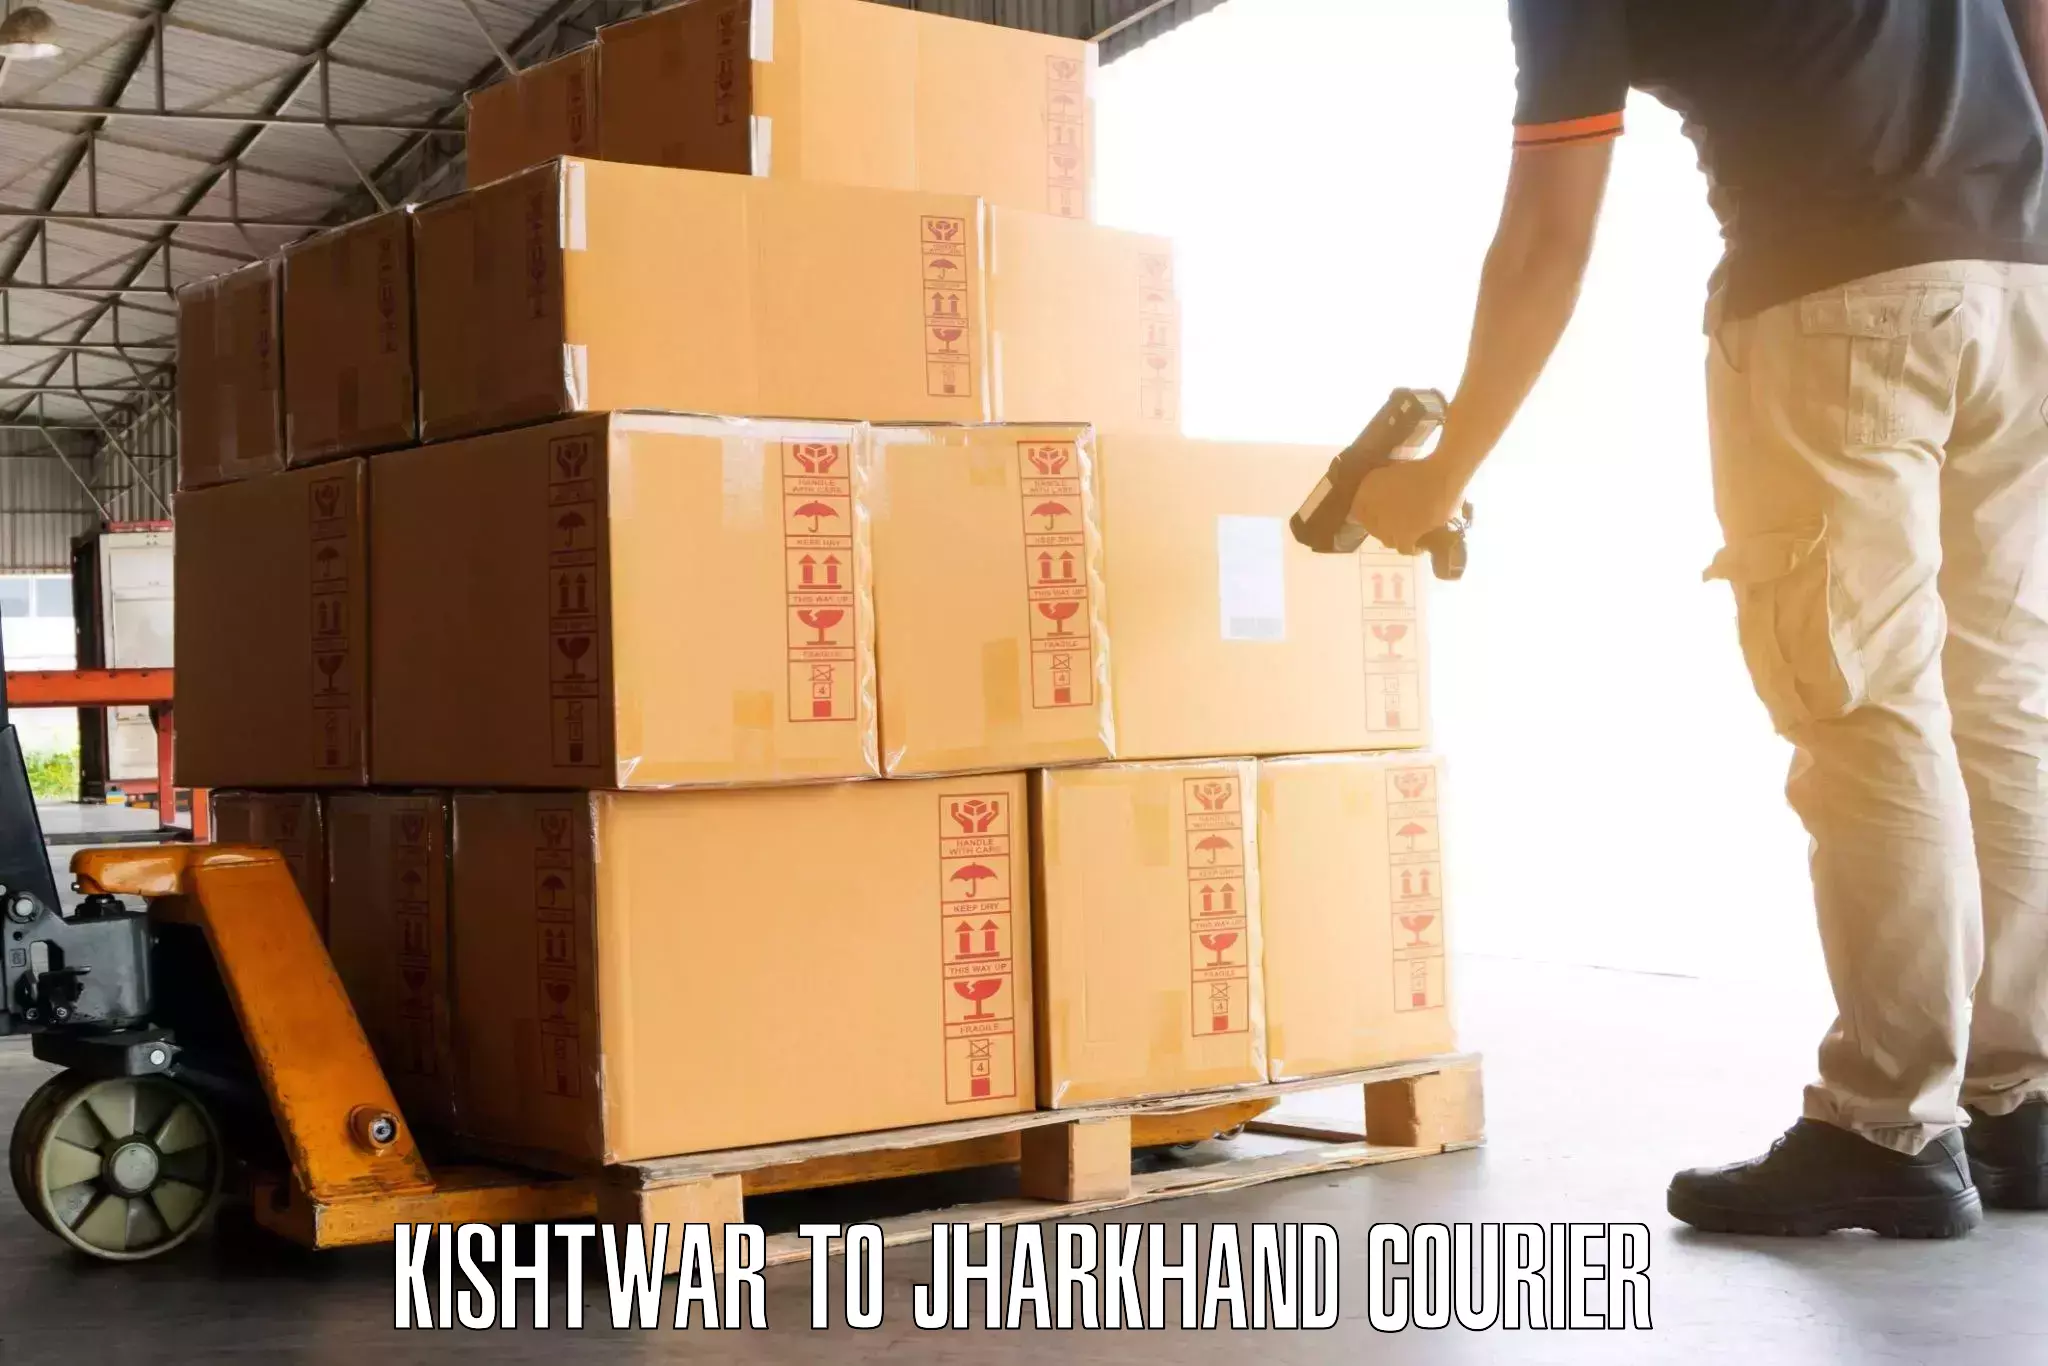 Scheduled baggage courier Kishtwar to Domchanch